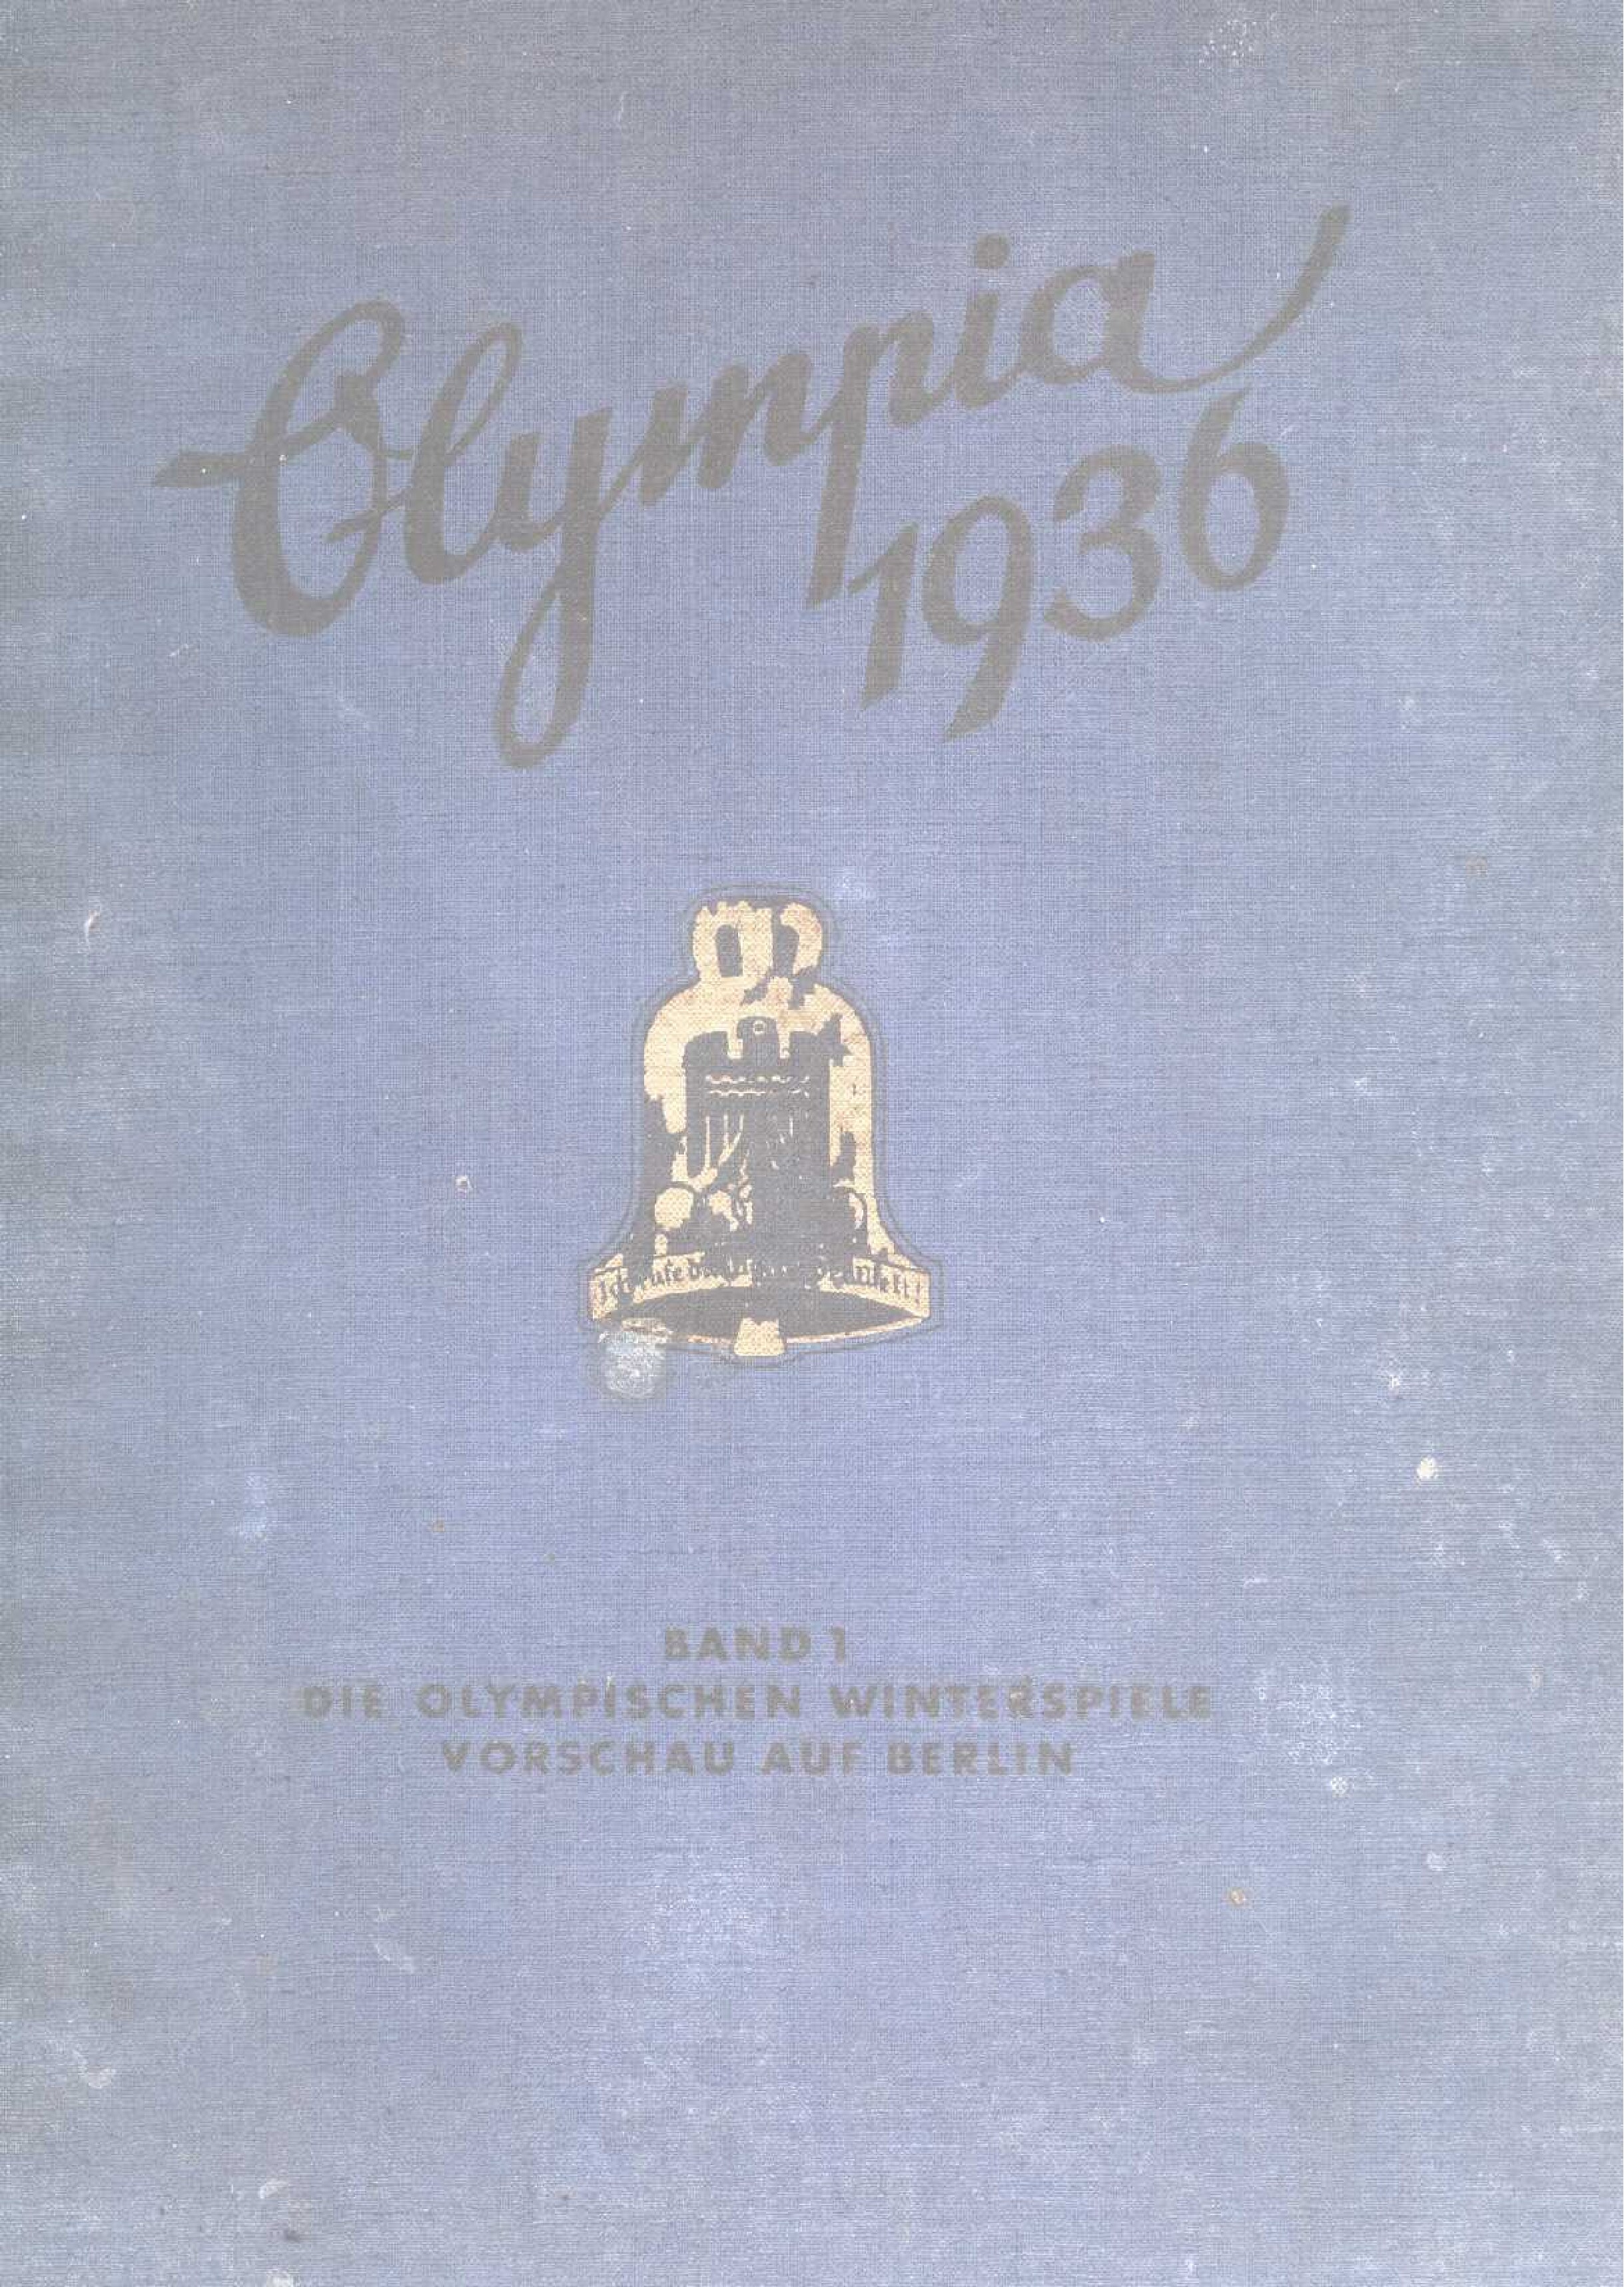 Olympia 1936 - Band 1 - Die olympischen Winterspiele (1936, 139 S., Scan)